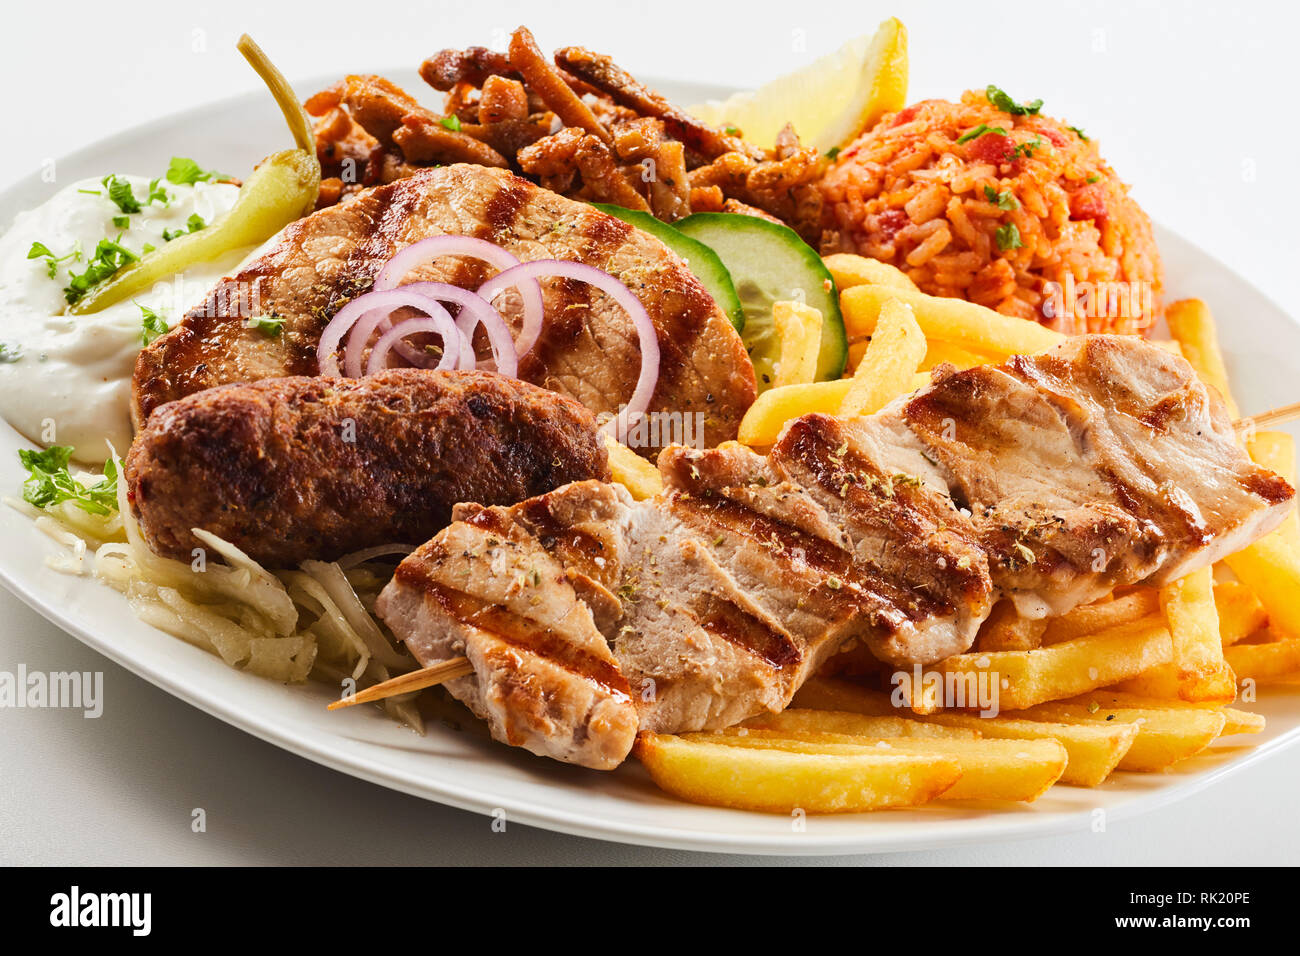 Un assortimento di grigliate di carne con patate fritte chips, saporito il riso e insalata servita su una piastra in una vista ravvicinata del regionale cucina greca Foto Stock